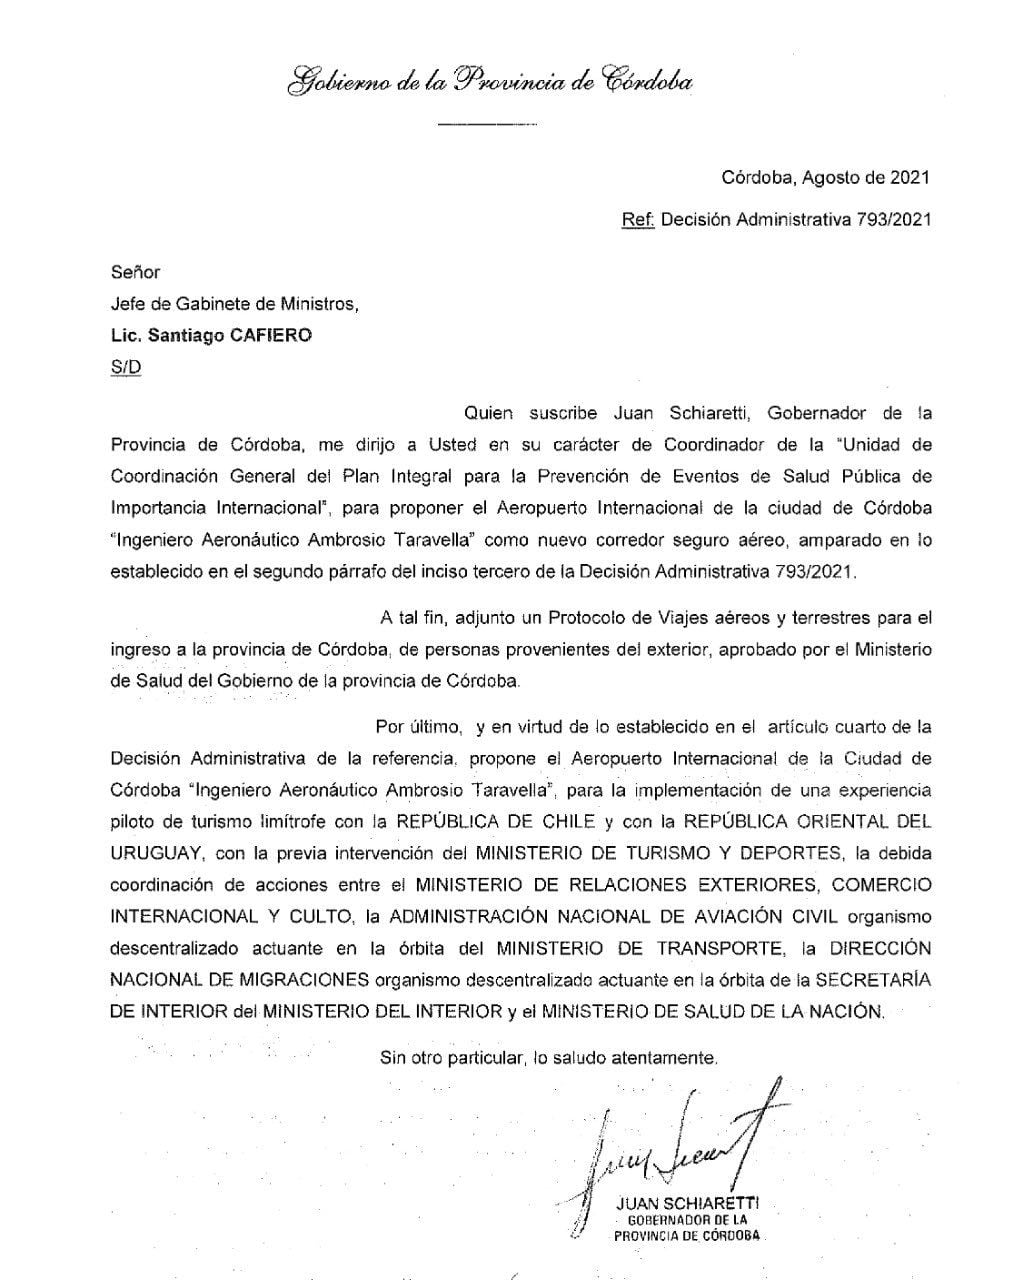 El gobernador de Córdoba solicitó la reactivación de vuelos internacionales en Córdoba.